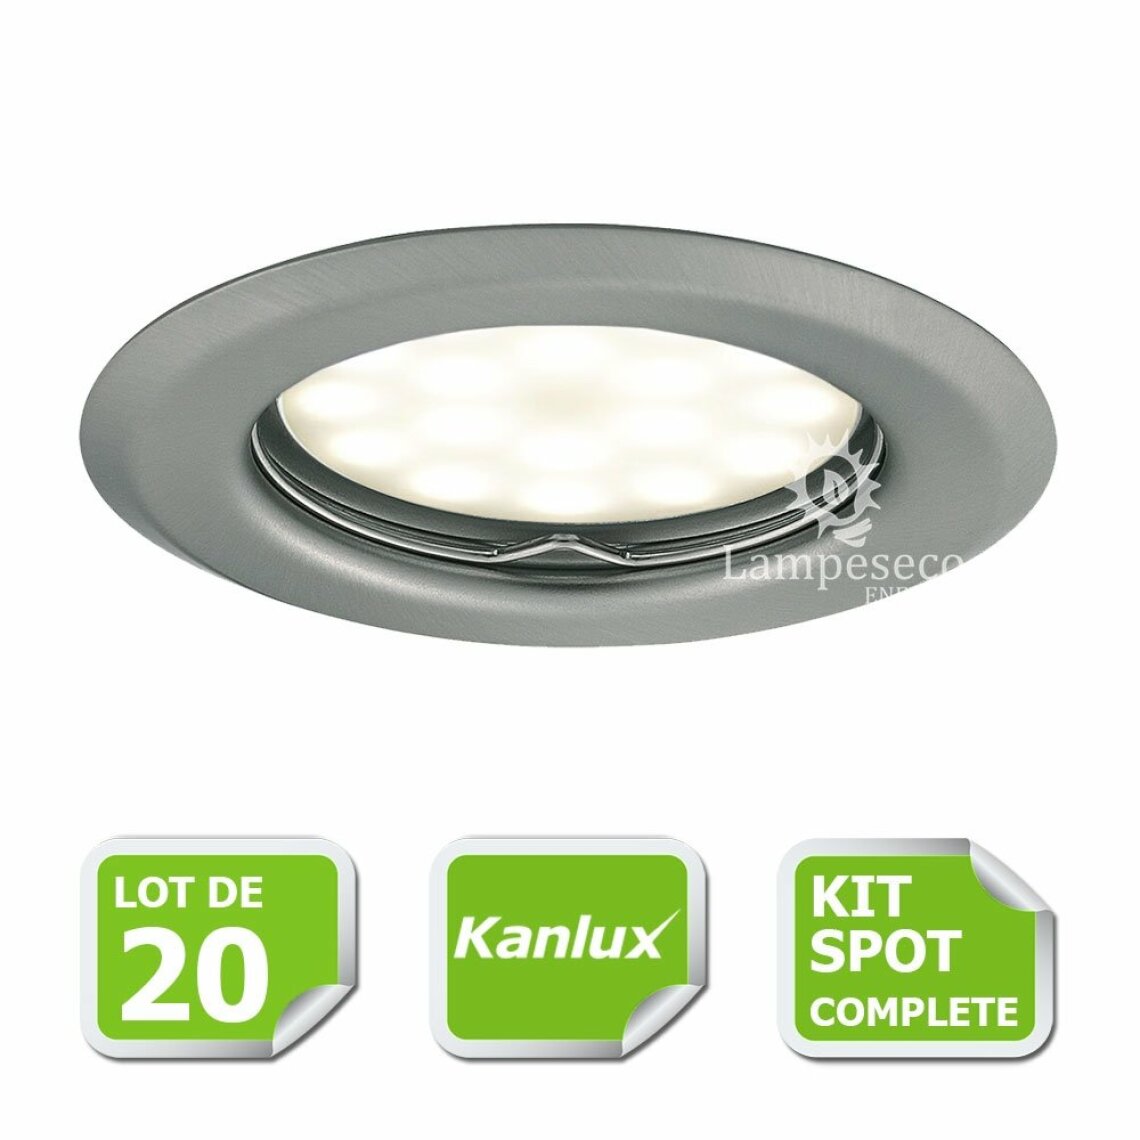 Kanlux - Kit complete de 20 Spots encastrable chrome mat marque Kanlux avec GU10 LED 5W Blanc Chaud - Boîtes d'encastrement